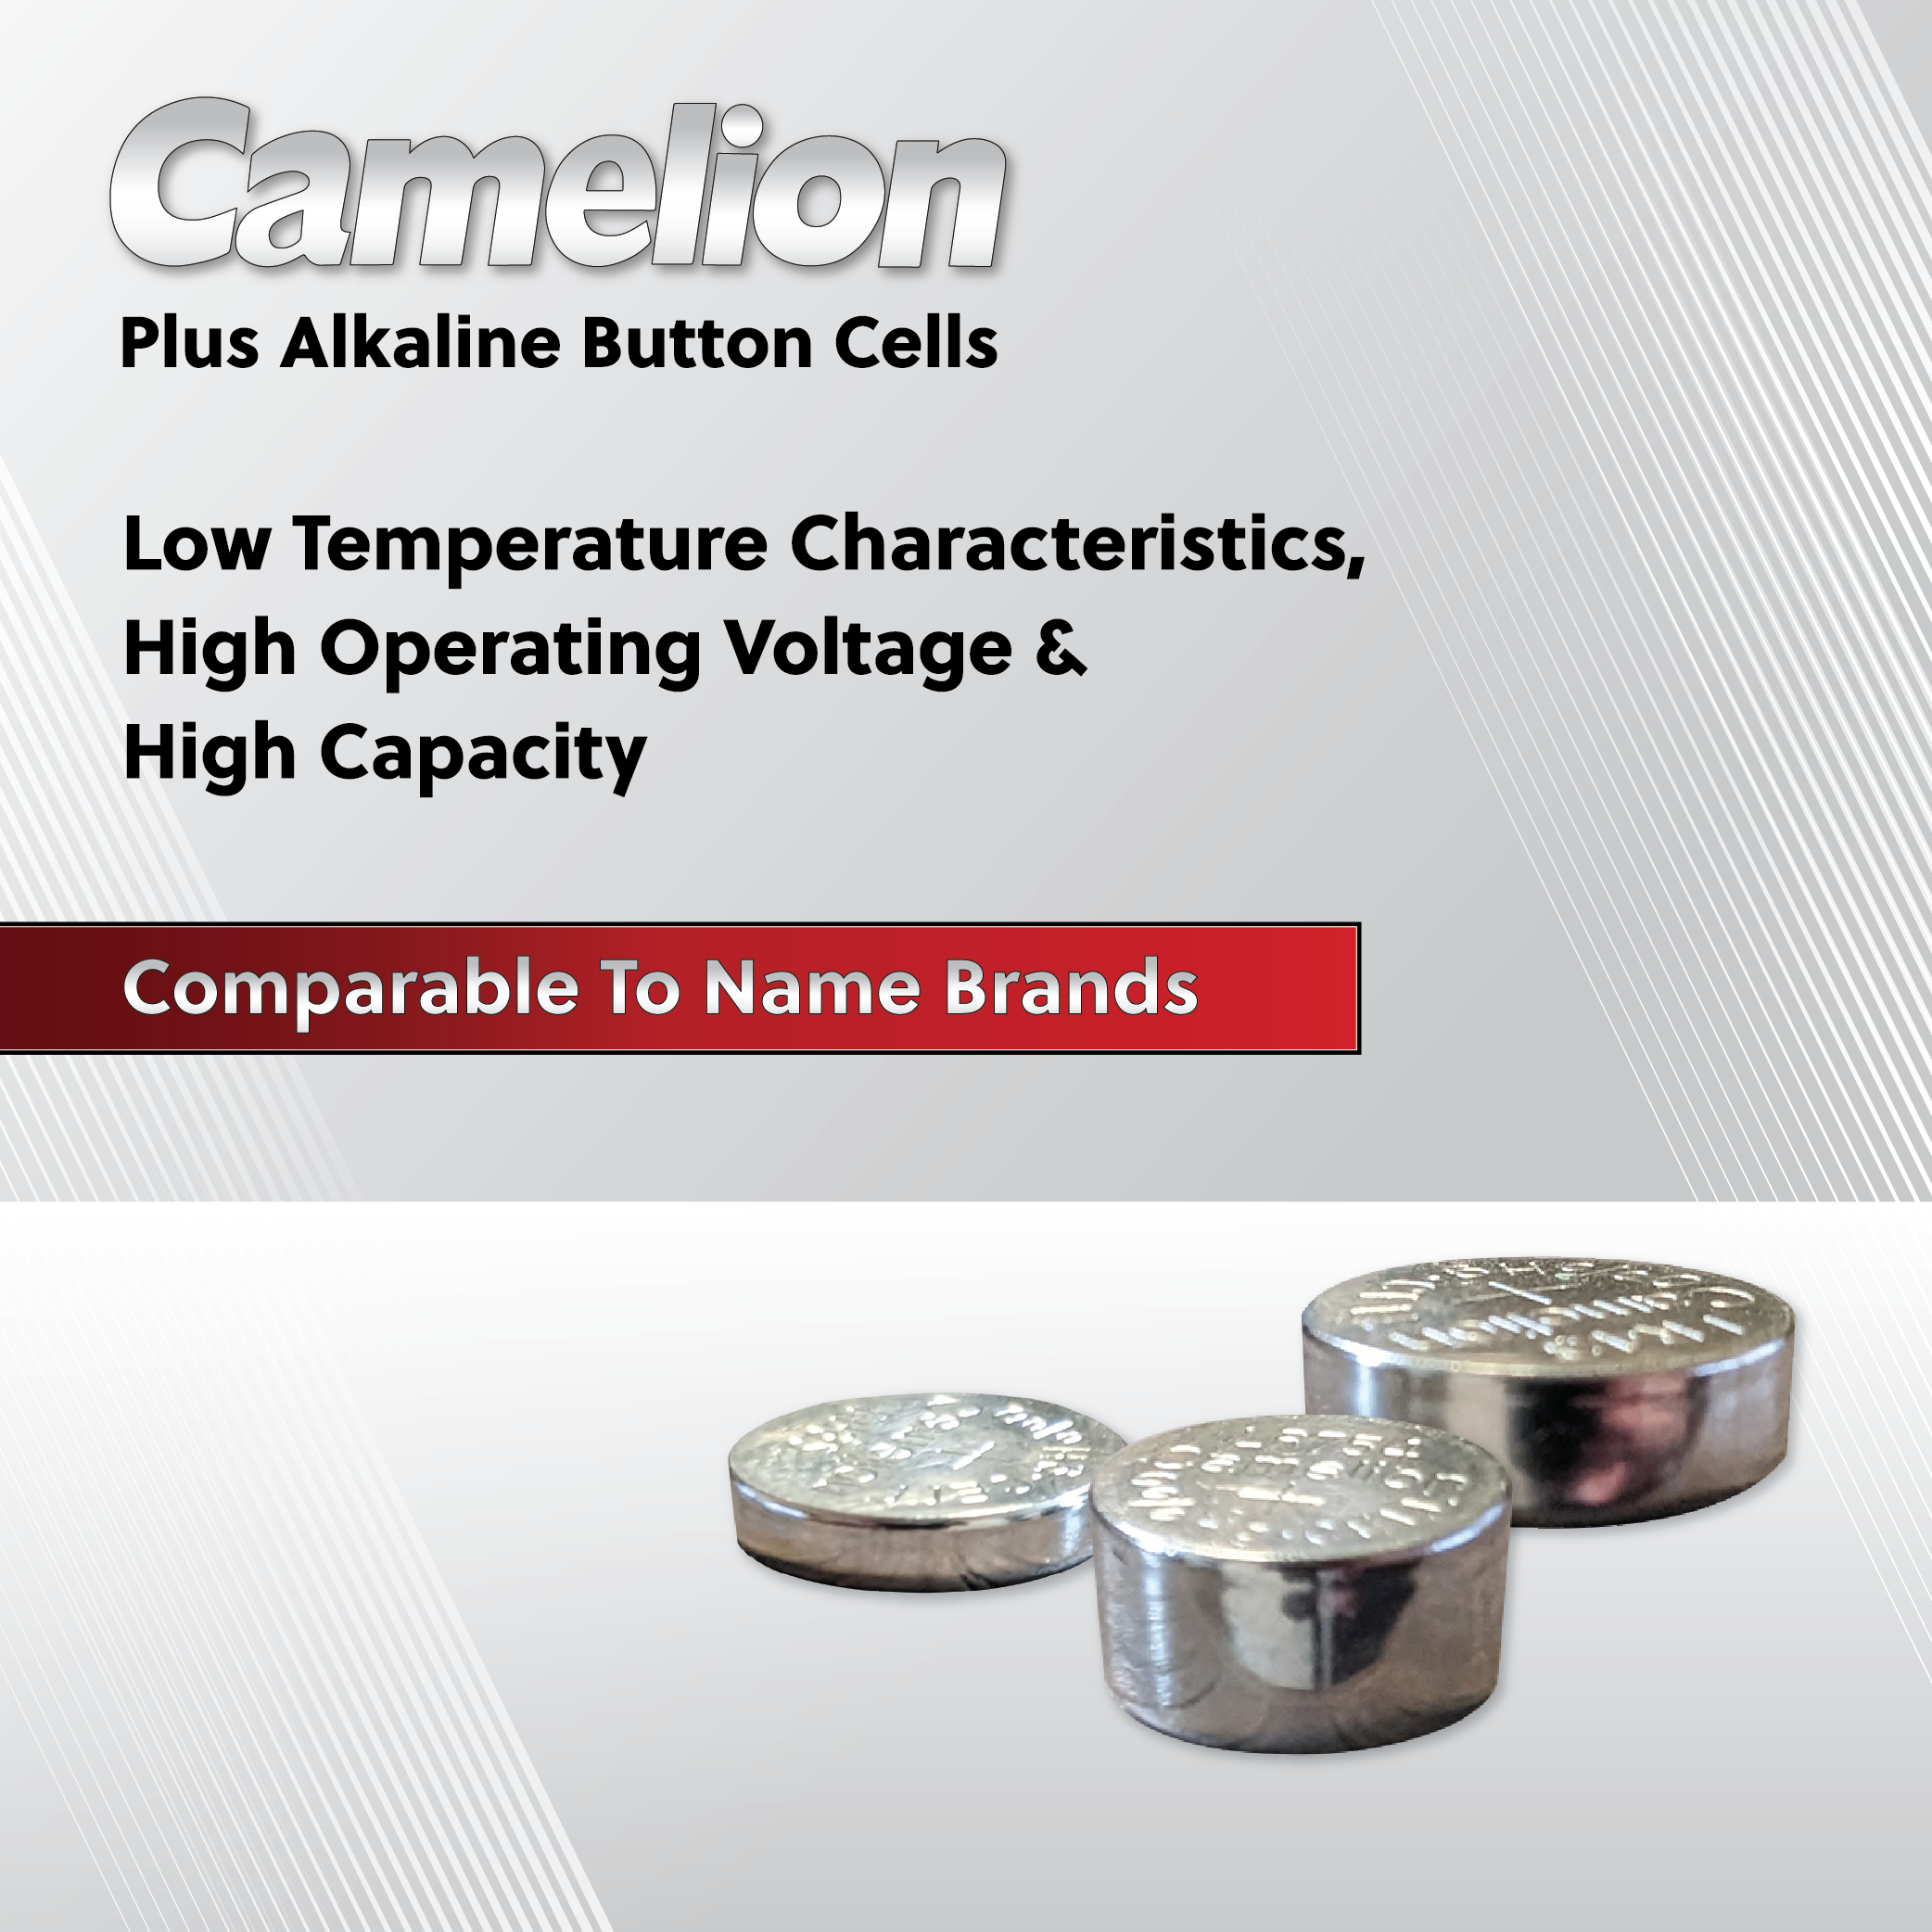 Camelion AG1 / 364 / LR621 1.5V Coin Cell Battery Pack of 10